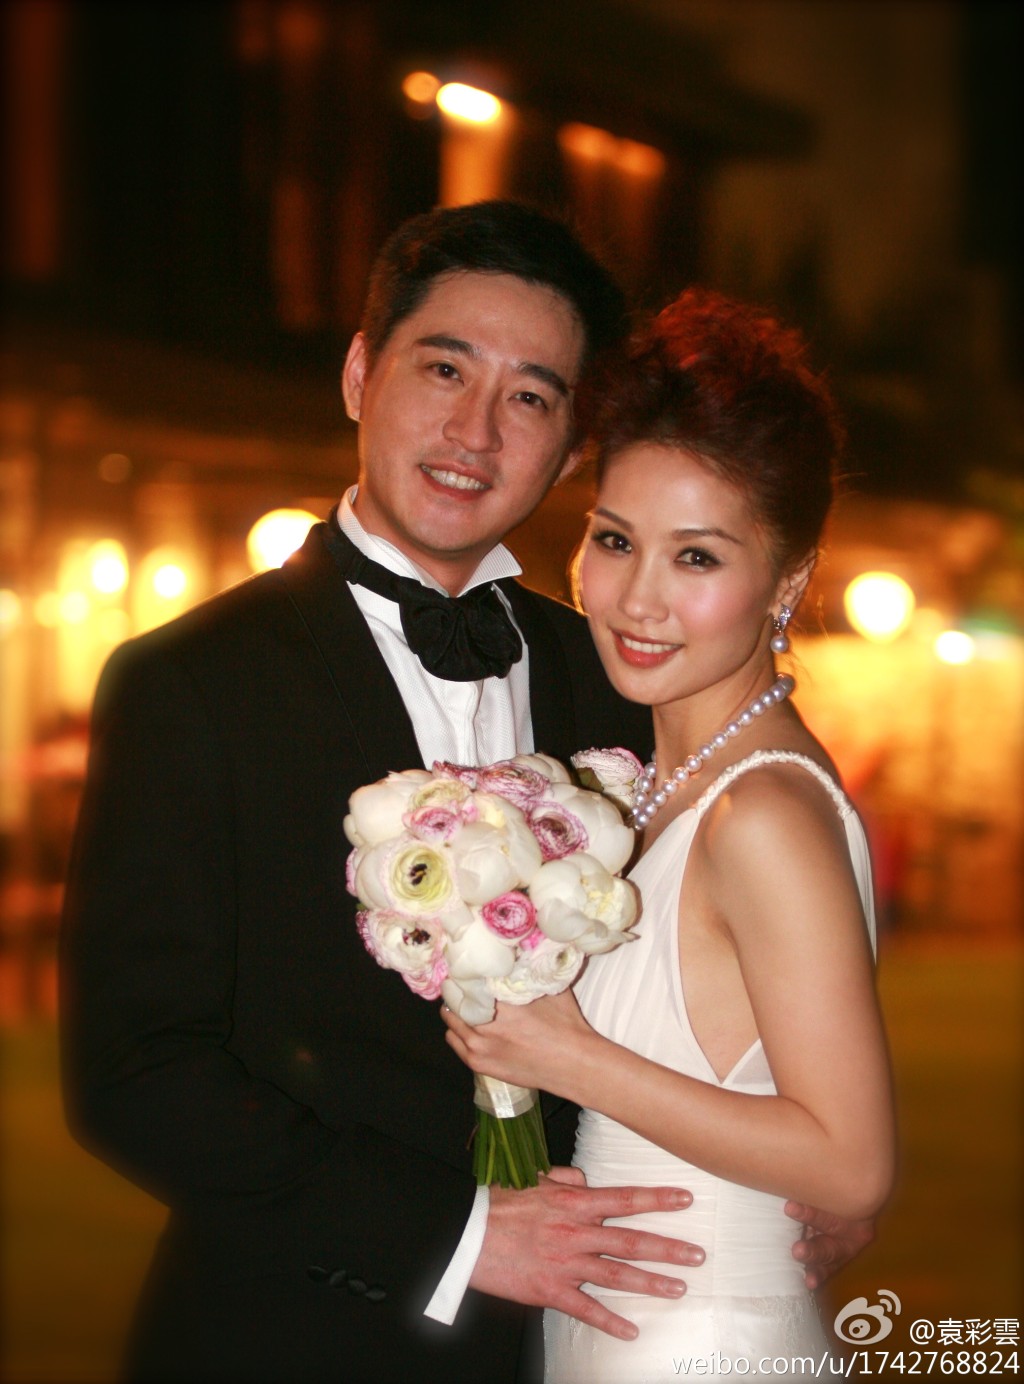 袁彩云在2009年与饮食界商人江铭峯（Anthony）结婚。